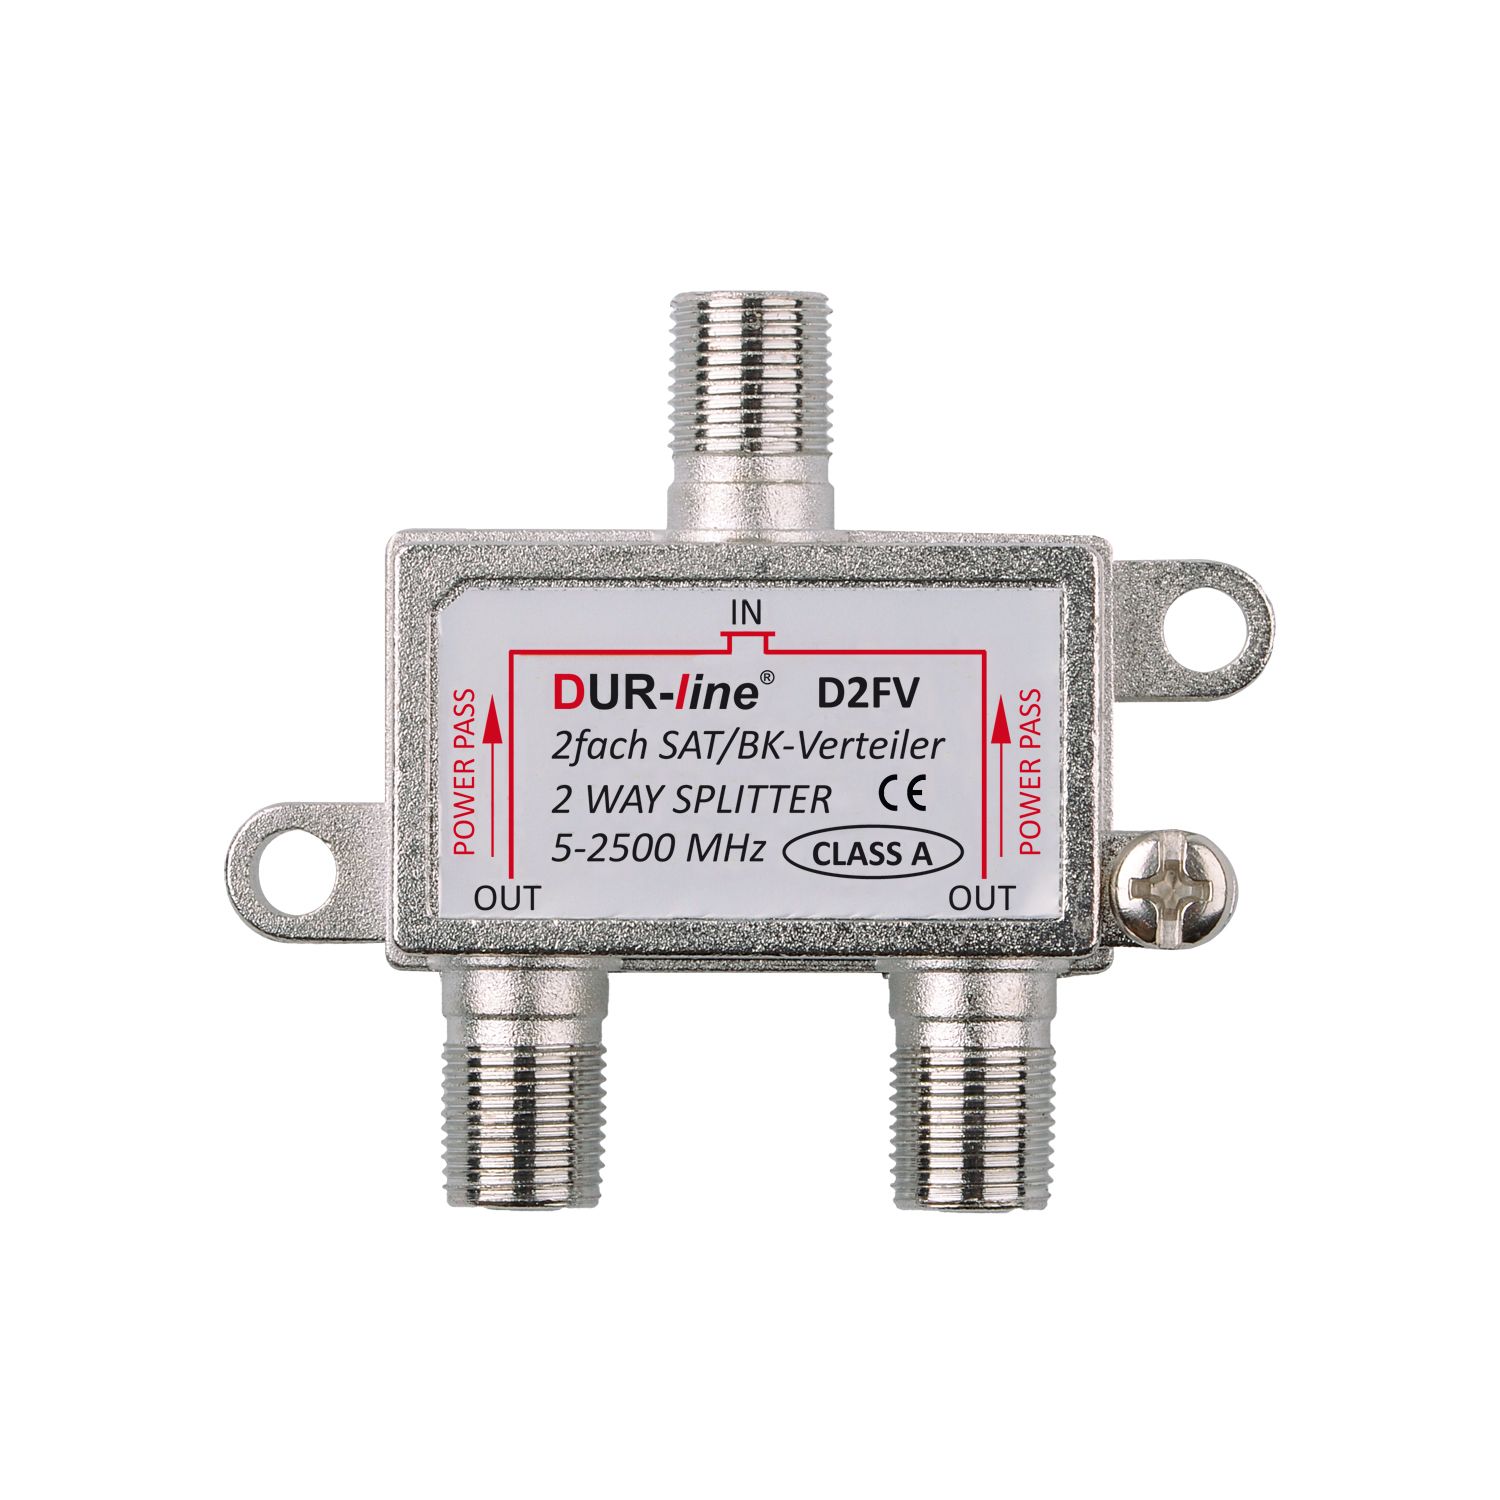 DUR-line D2FV - SAT/BK-Verteiler